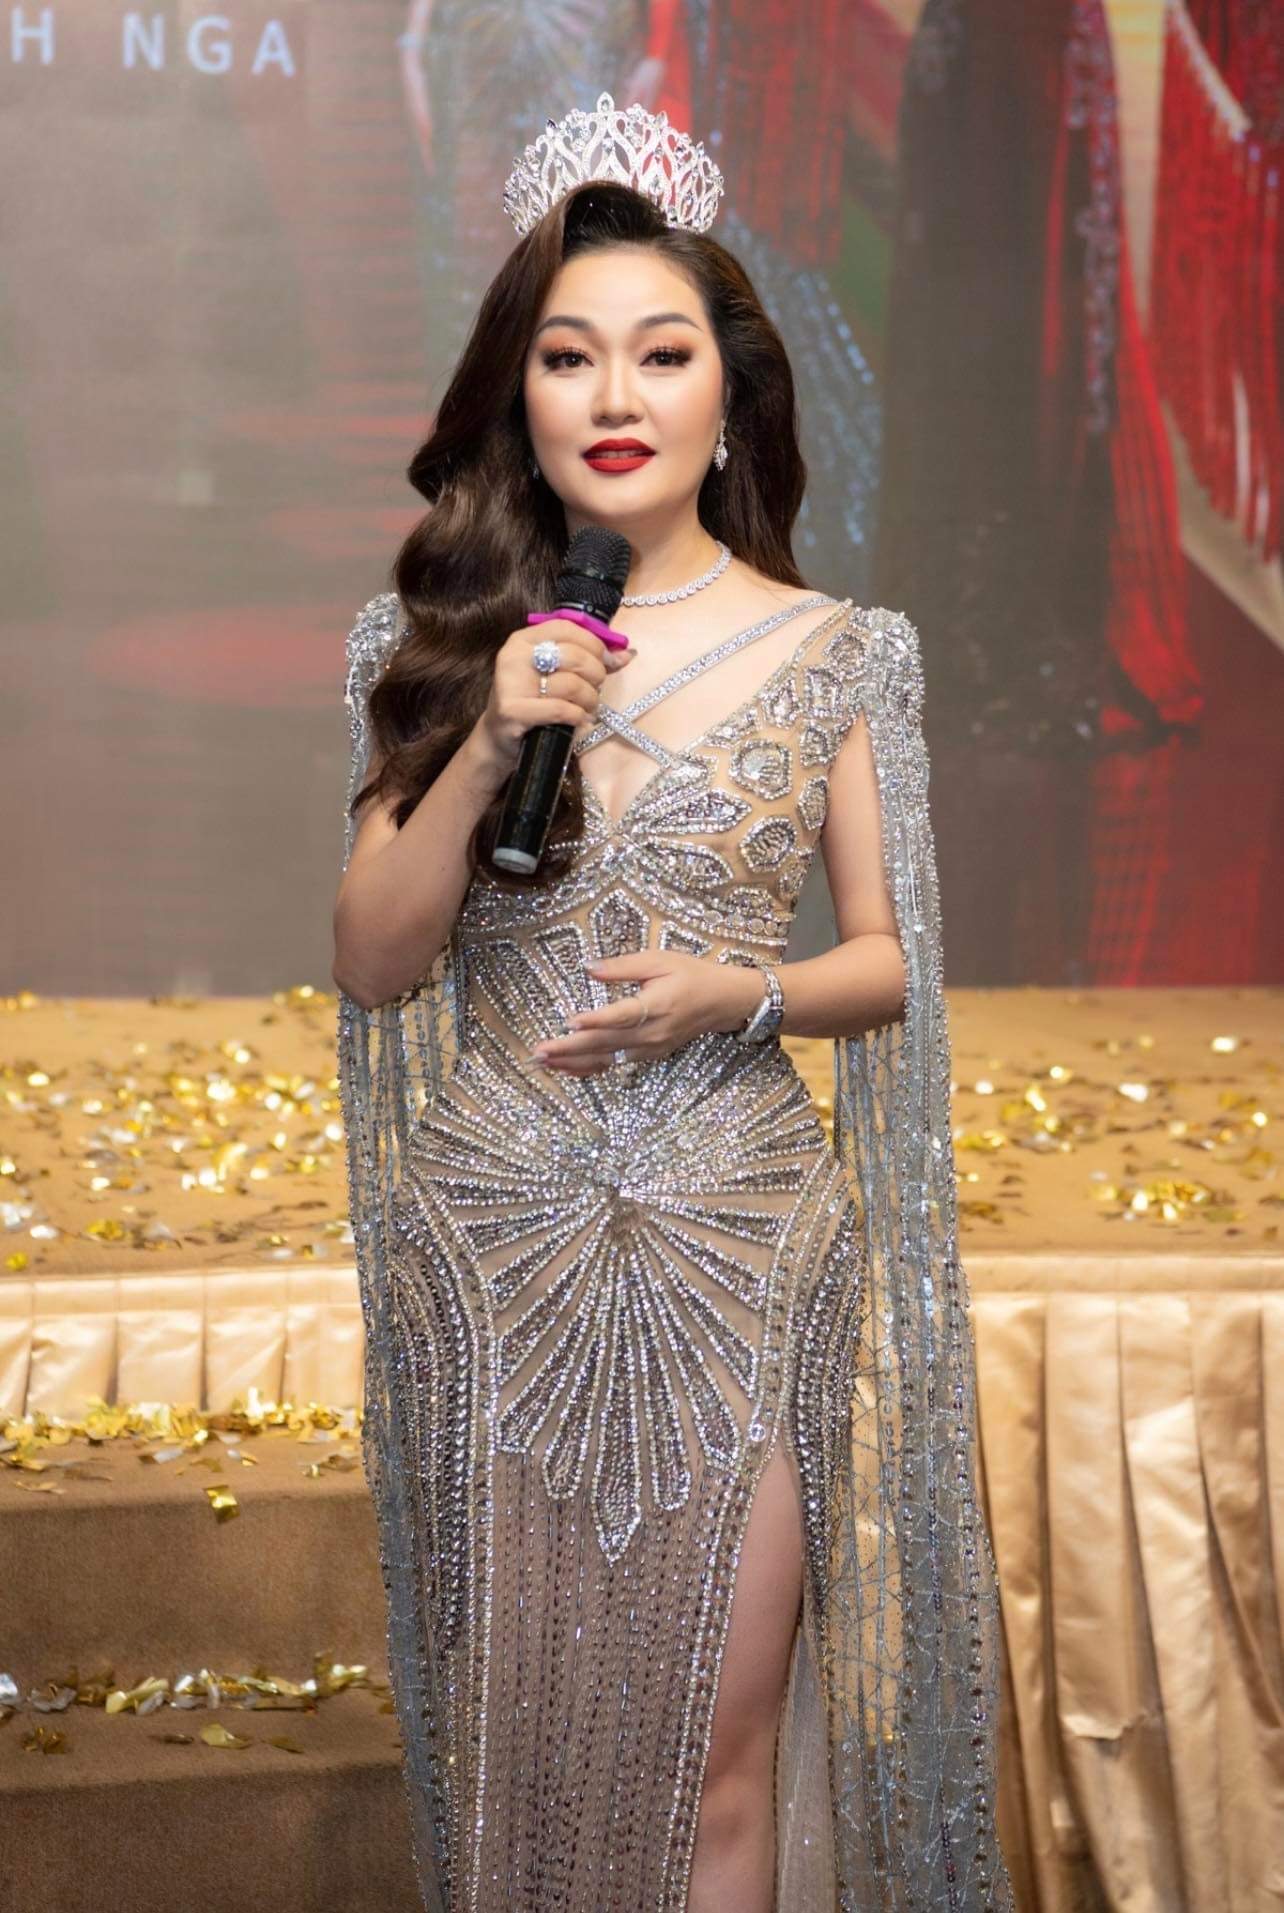  Á hậu Phương Nhi rạng rỡ chúc mừng Á hậu 1 Mrs Universe 2022 Hoàng Thanh Nga 